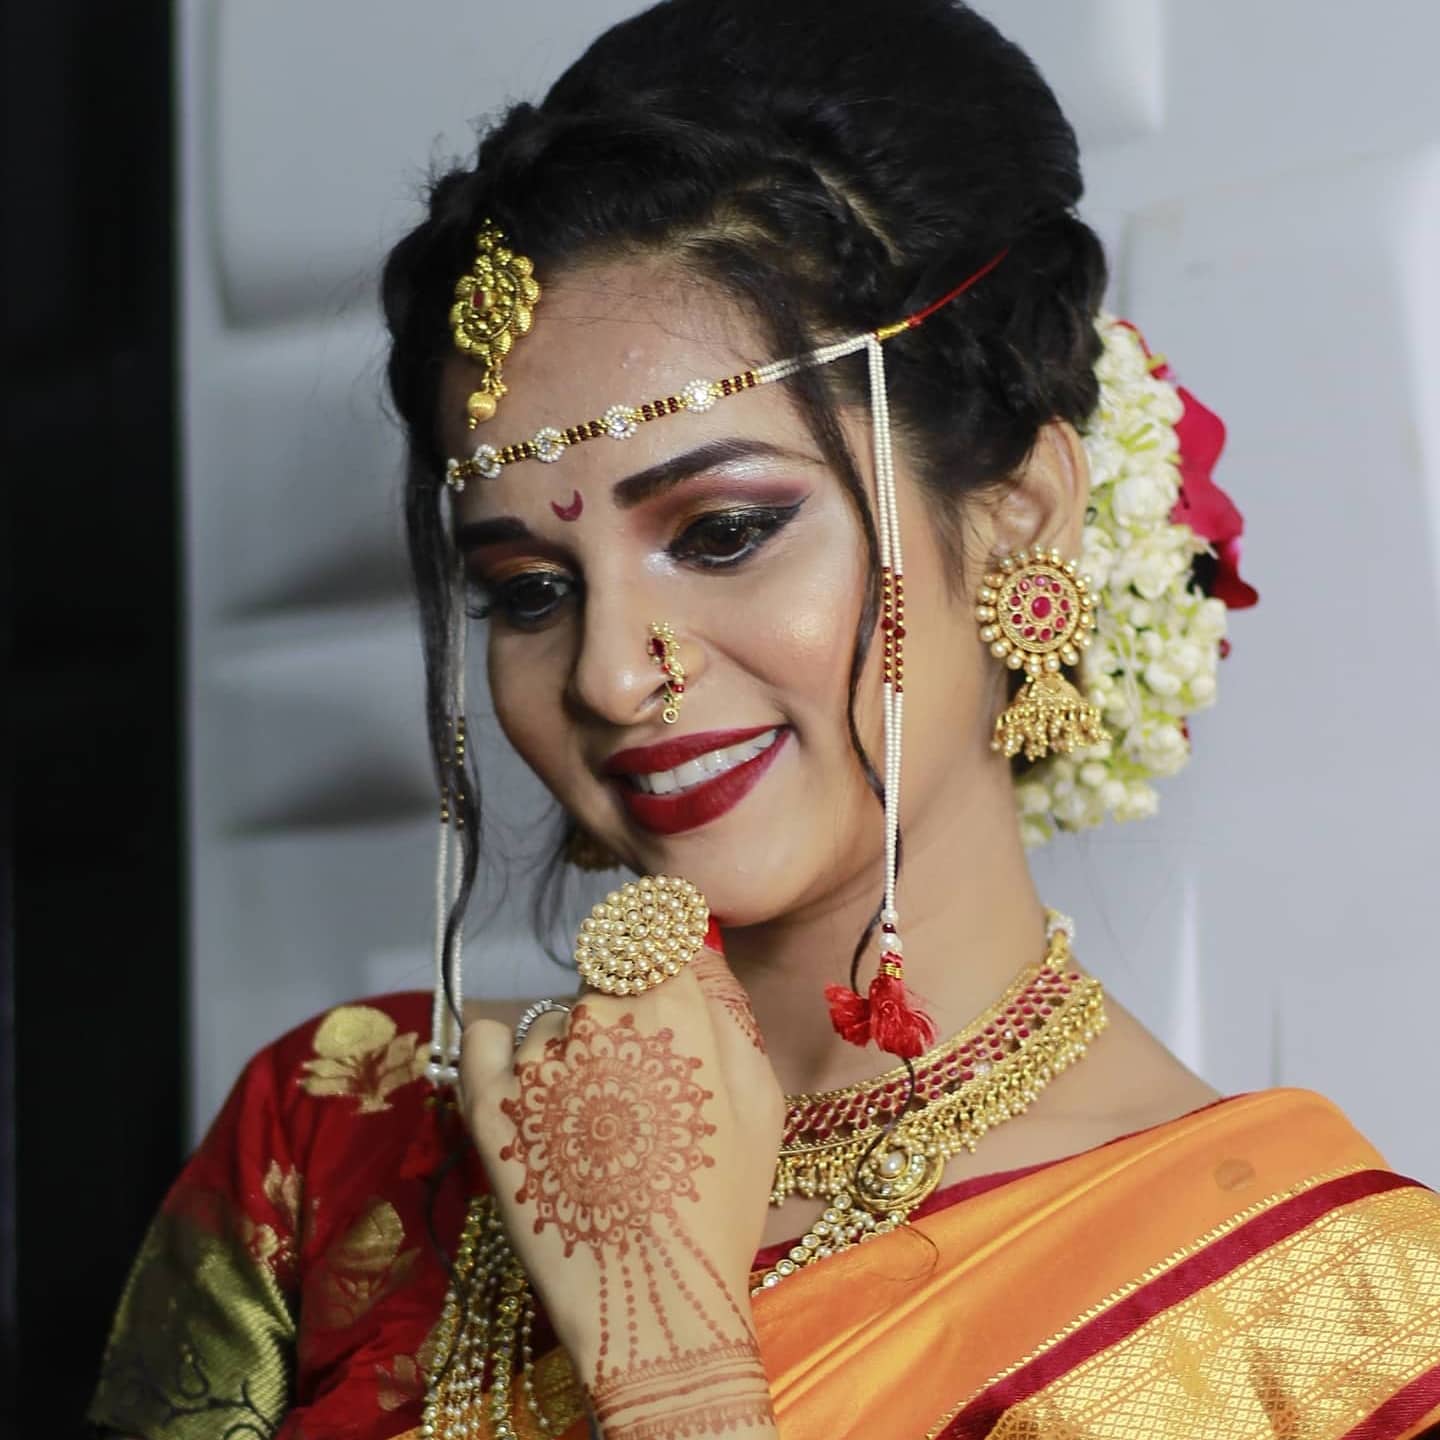 sonali-malekar-makeup-artist-mumbai